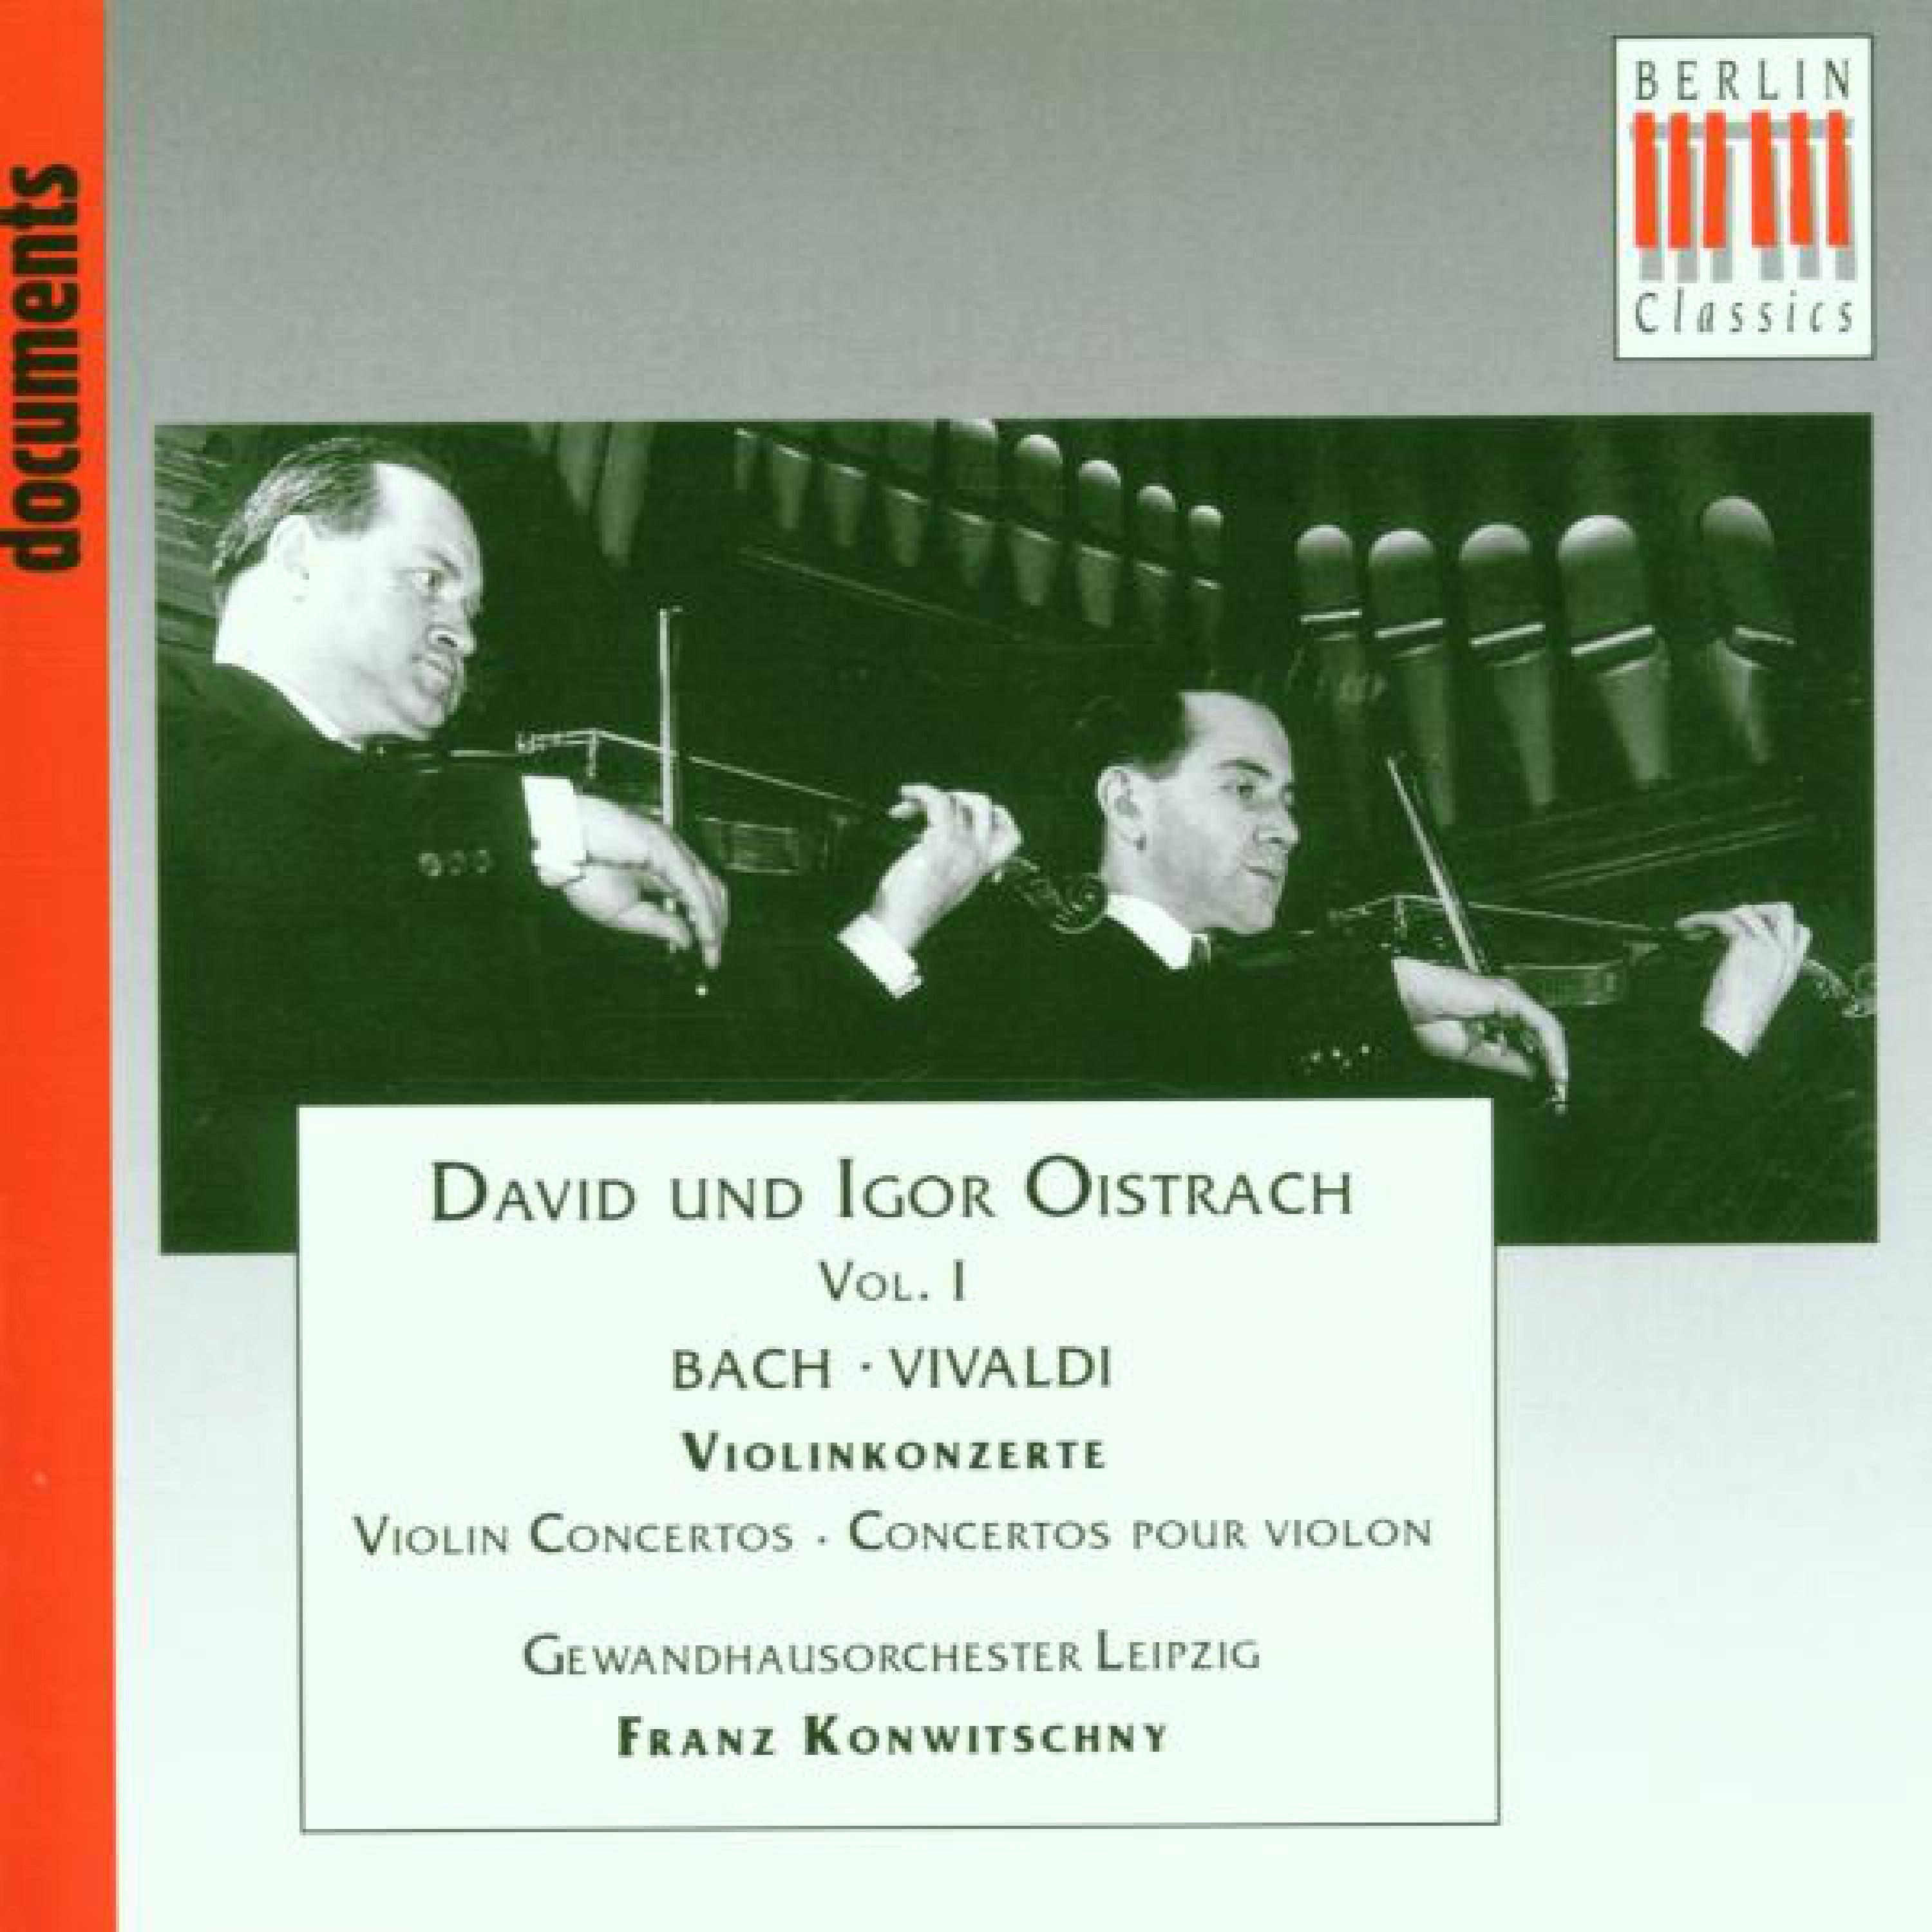 Concerto grosso for 2 Violins & Strings, Op. 3, No. 8 in A Minor, RV 522: II. Larghetto e spiritoso